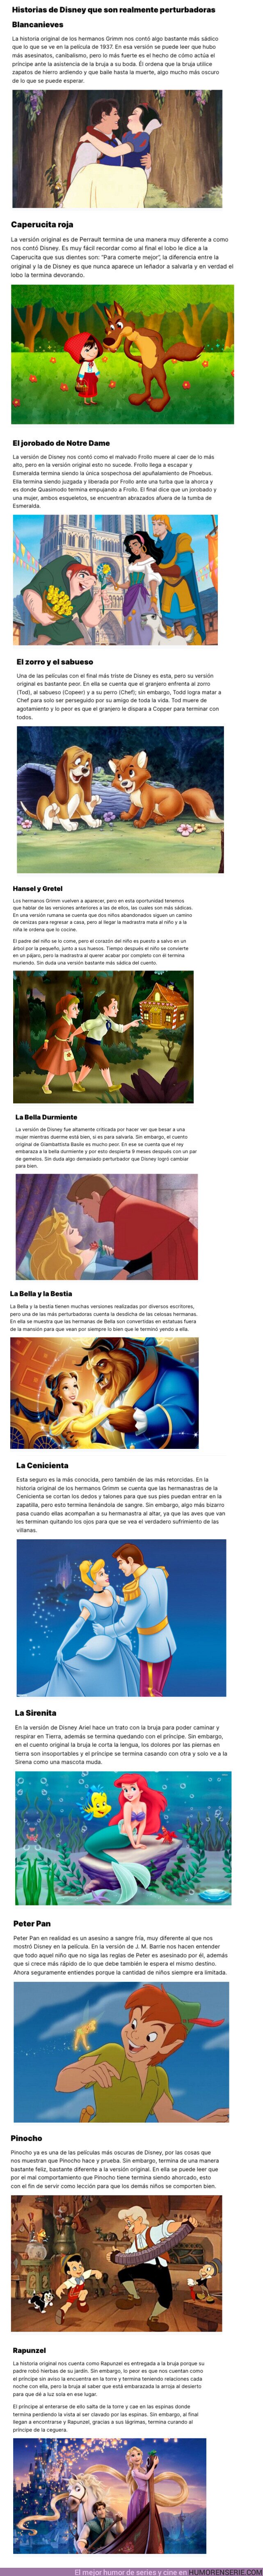 126587 - GALERÍA: 12 Historias de Disney que son realmente perturbadoras